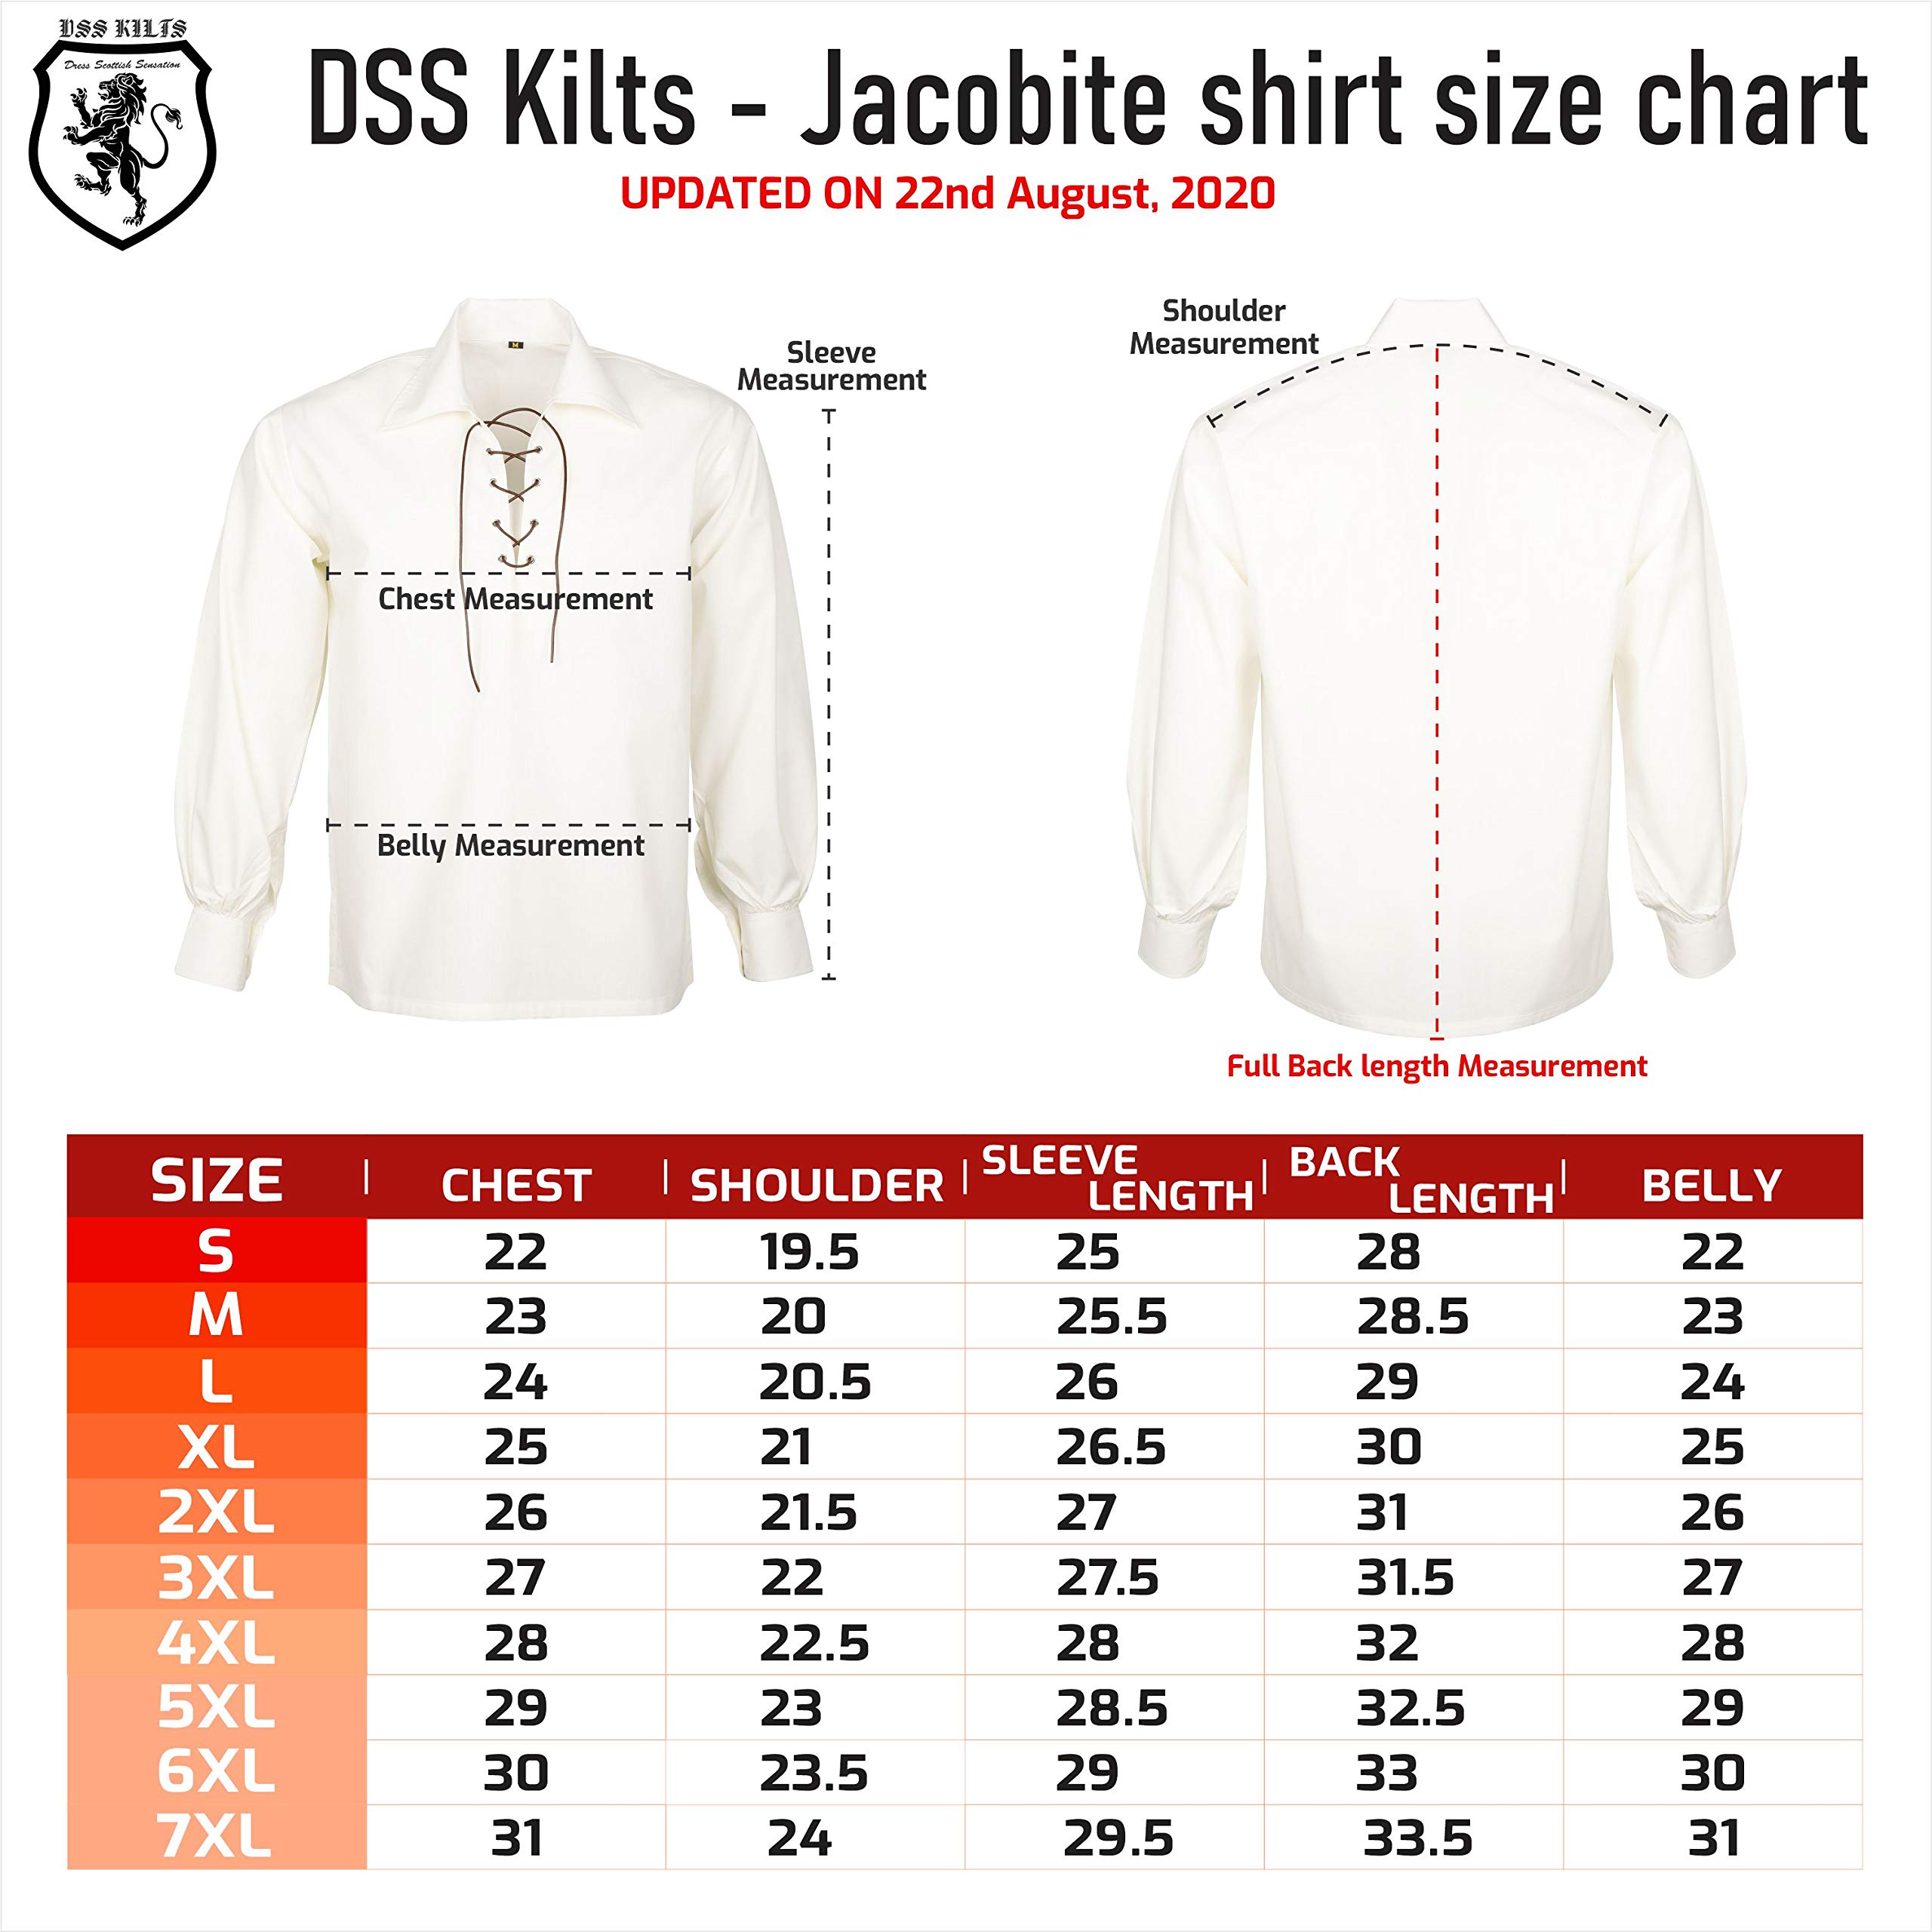 DSS KILT- Men's Jacobite Ghllie Kilt Shirts Medieval Renaissance Pirate Costume Long Sleeve Lace Up Henley Shirt